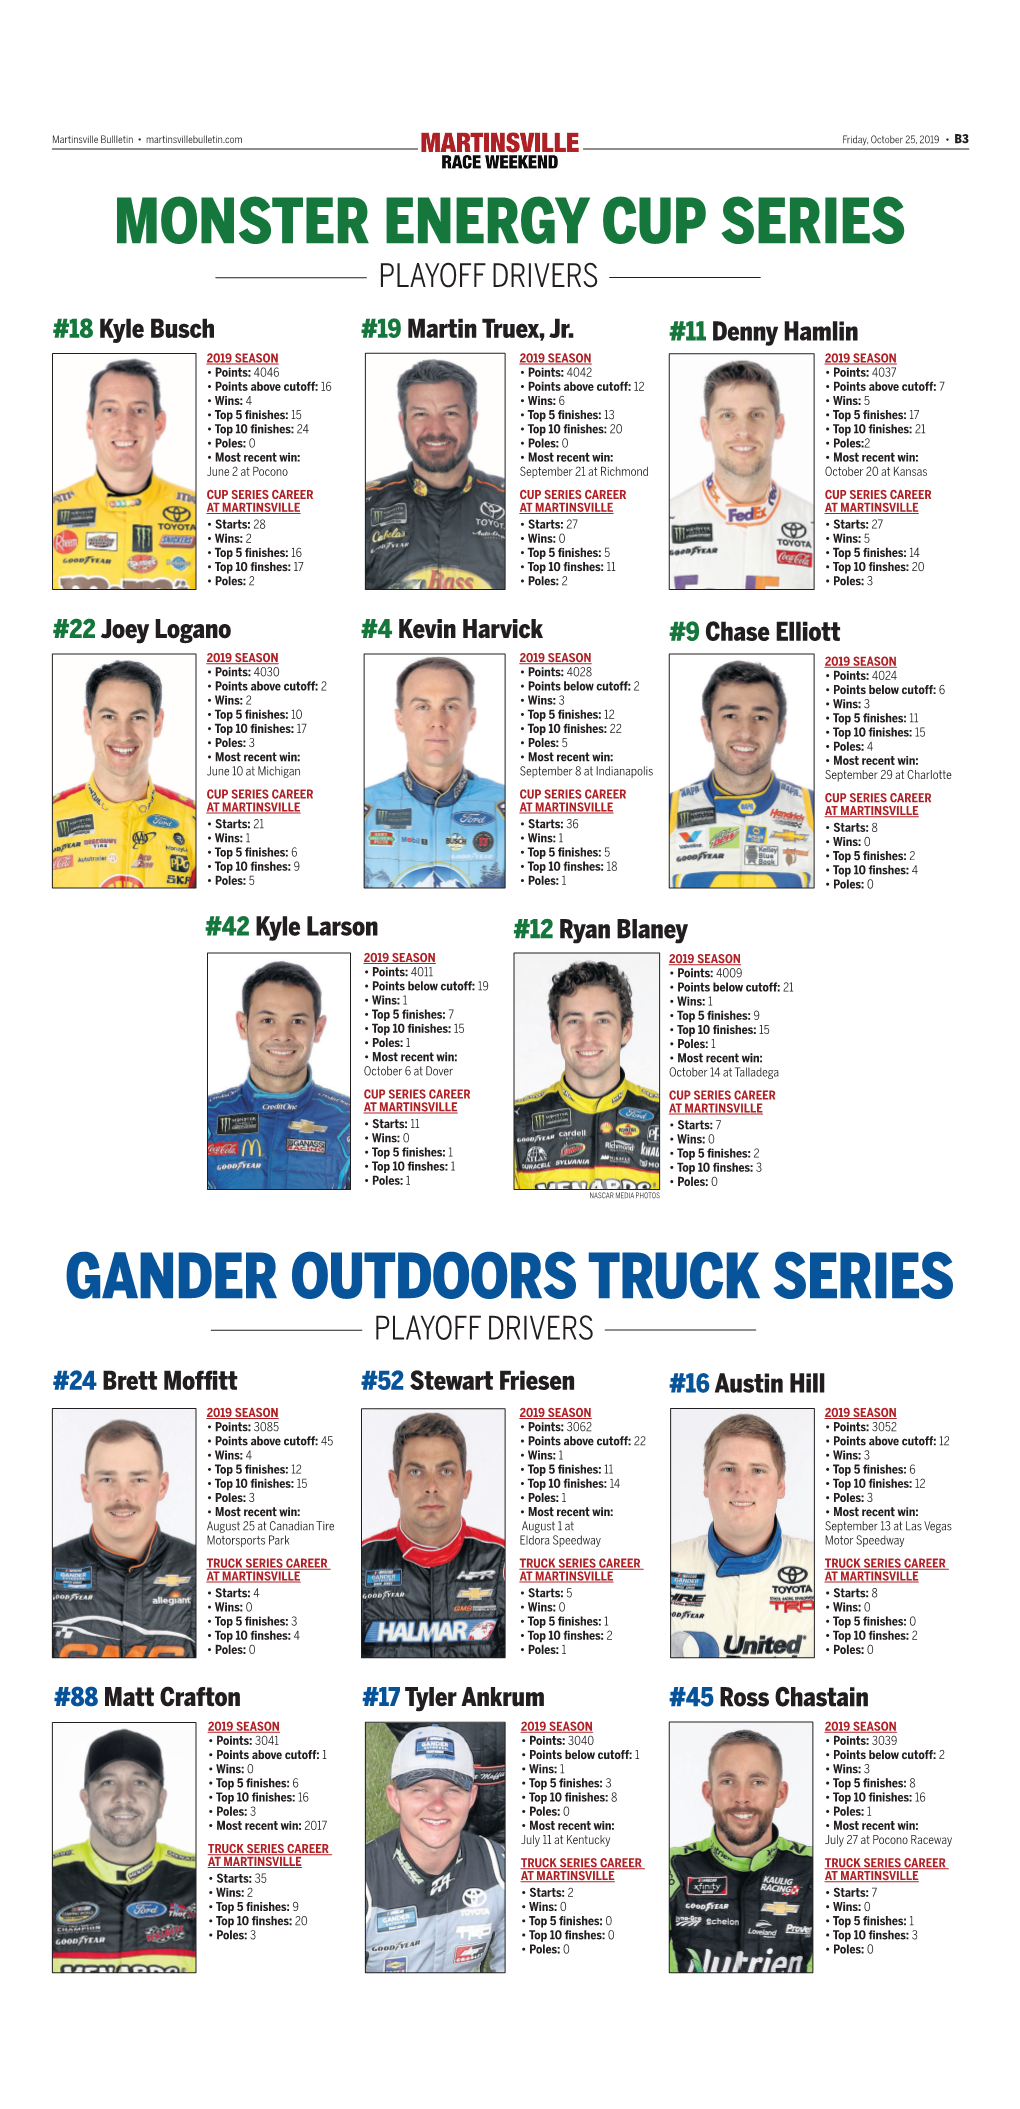 Monster Energy Cup Series Gander Outdoors Truck Series